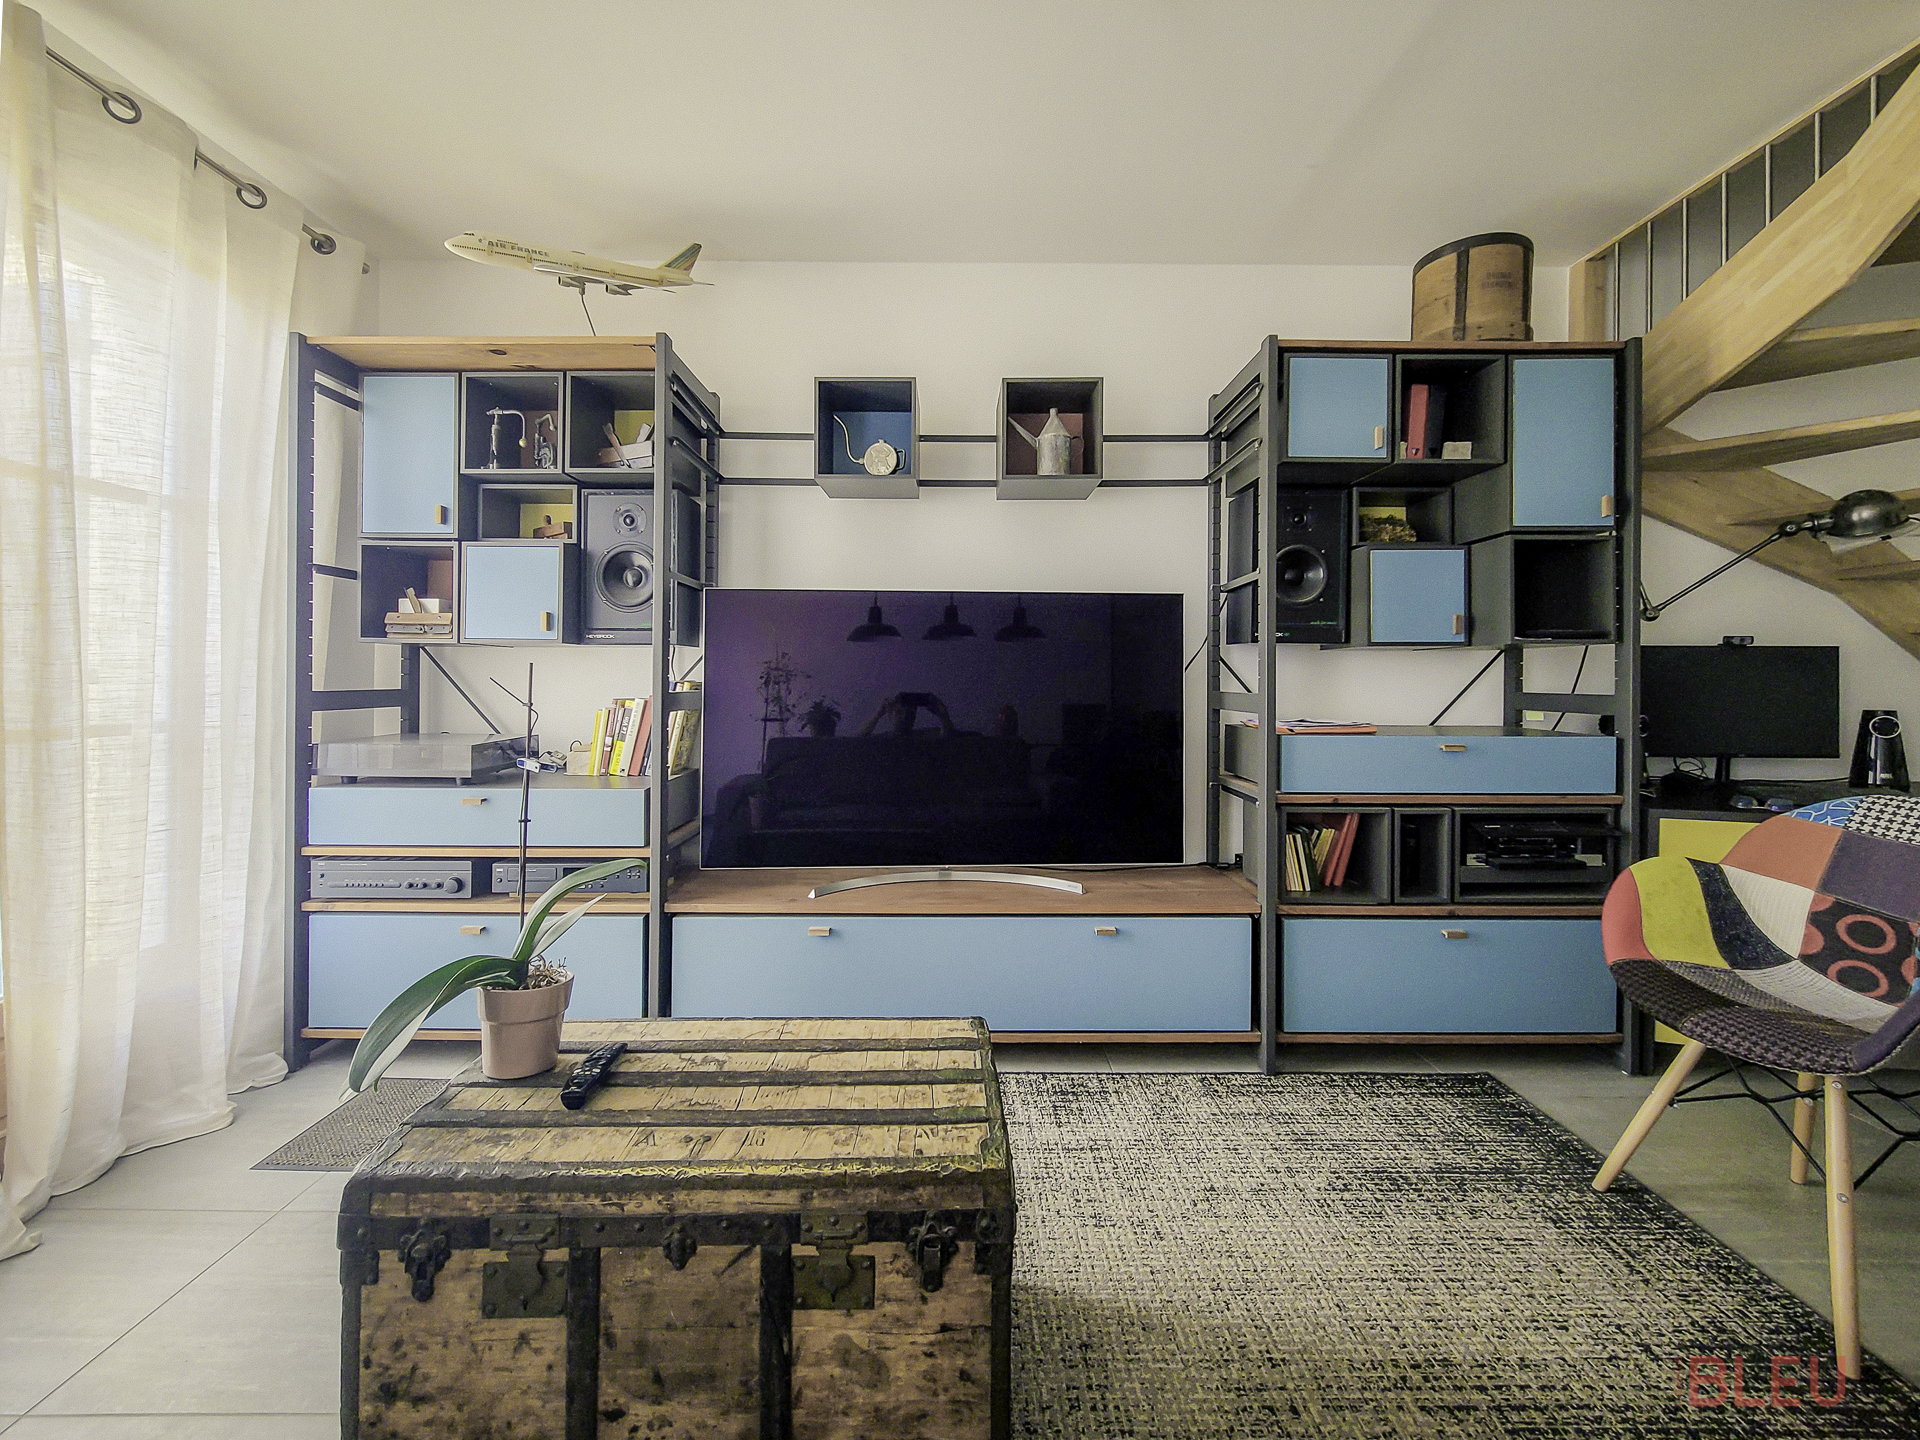 Espace de vie éclectique avec unité de rangement industrielle, malle vintage et chaise patchwork - Projet de rénovation appartement à Montrouge par notre agence d'architecture intérieur Paris